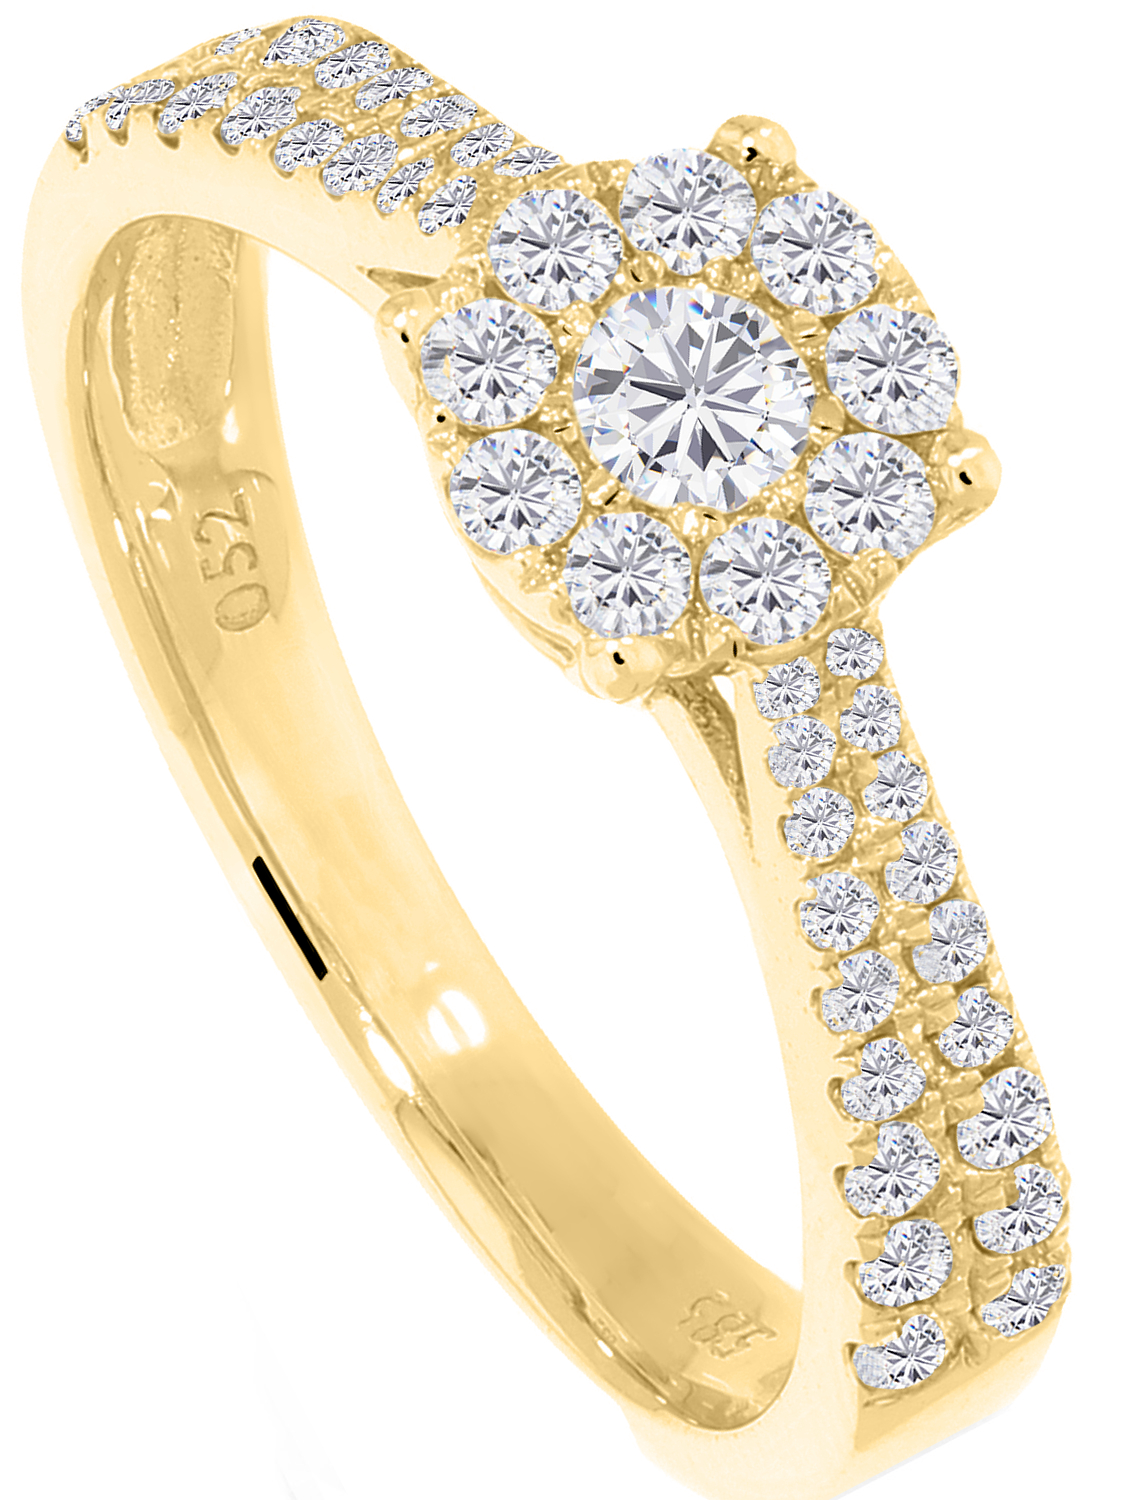 Irina - Damen Verlobungsring Gold 585 mit Diamanten - 0.50ct. - Größe 56